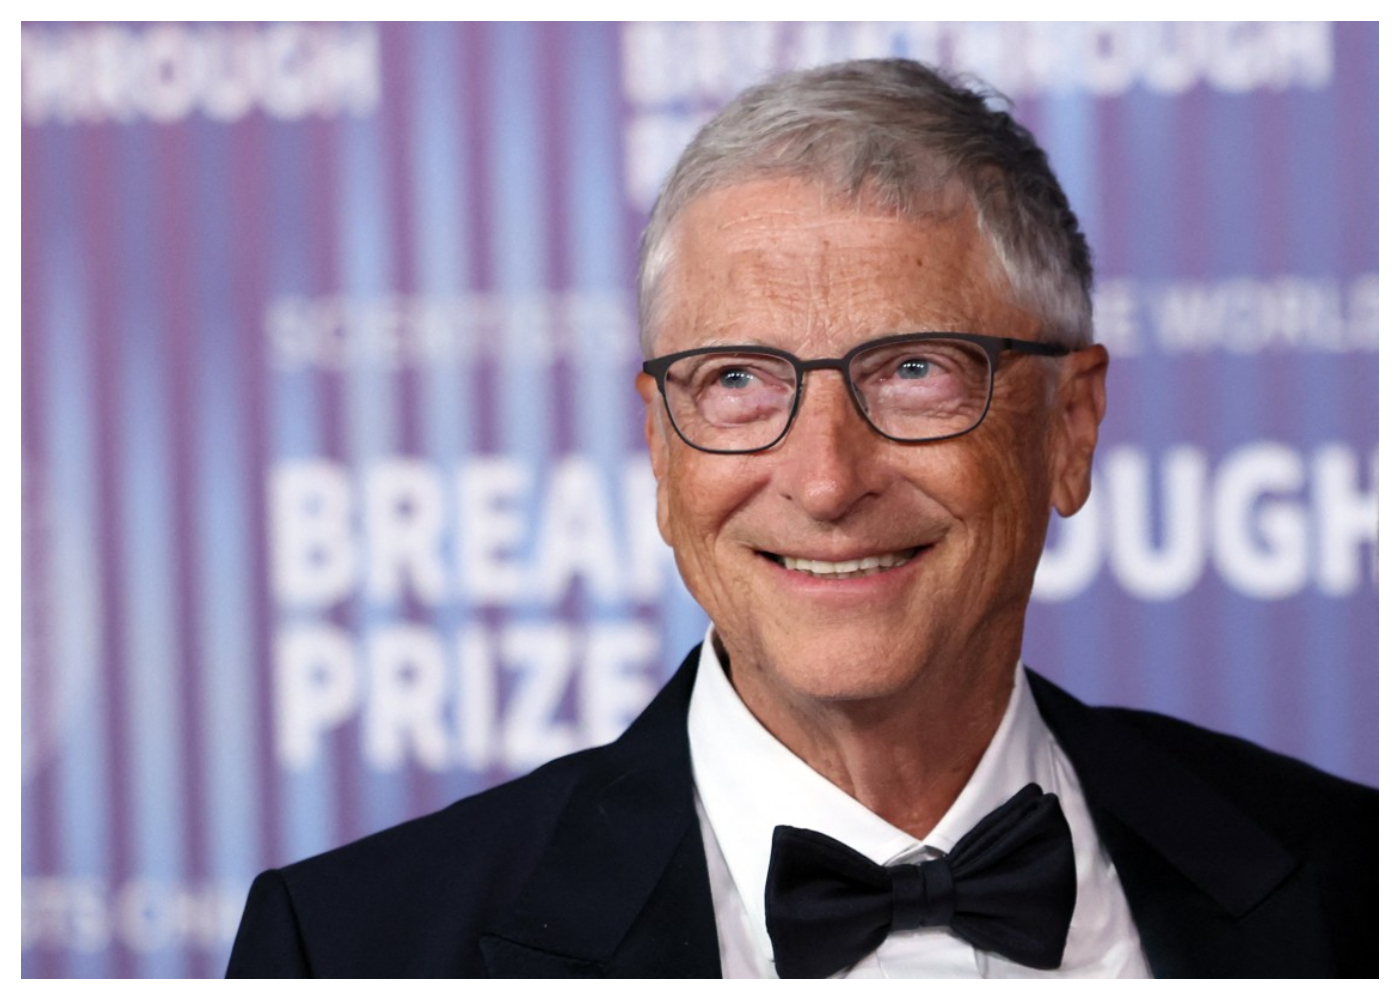 Bill Gates fundador de Microsoft aseguró que prefiere contratar a personas perezosas en sus empresas